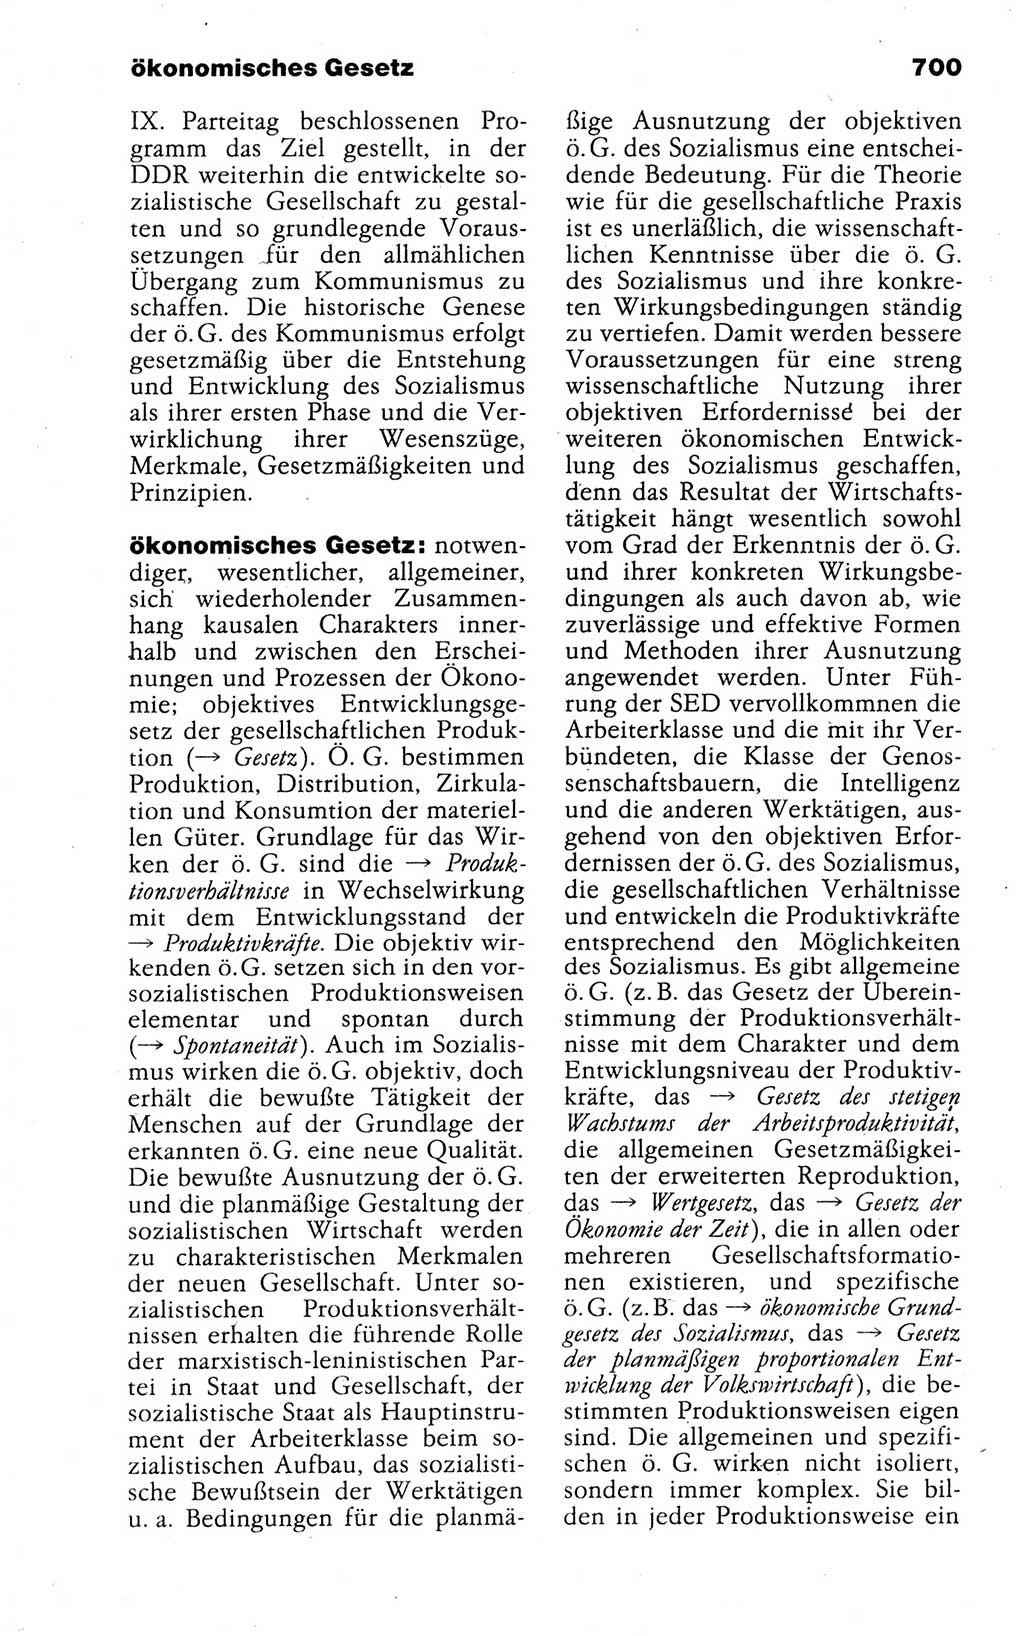 Kleines politisches Wörterbuch [Deutsche Demokratische Republik (DDR)] 1988, Seite 700 (Kl. pol. Wb. DDR 1988, S. 700)